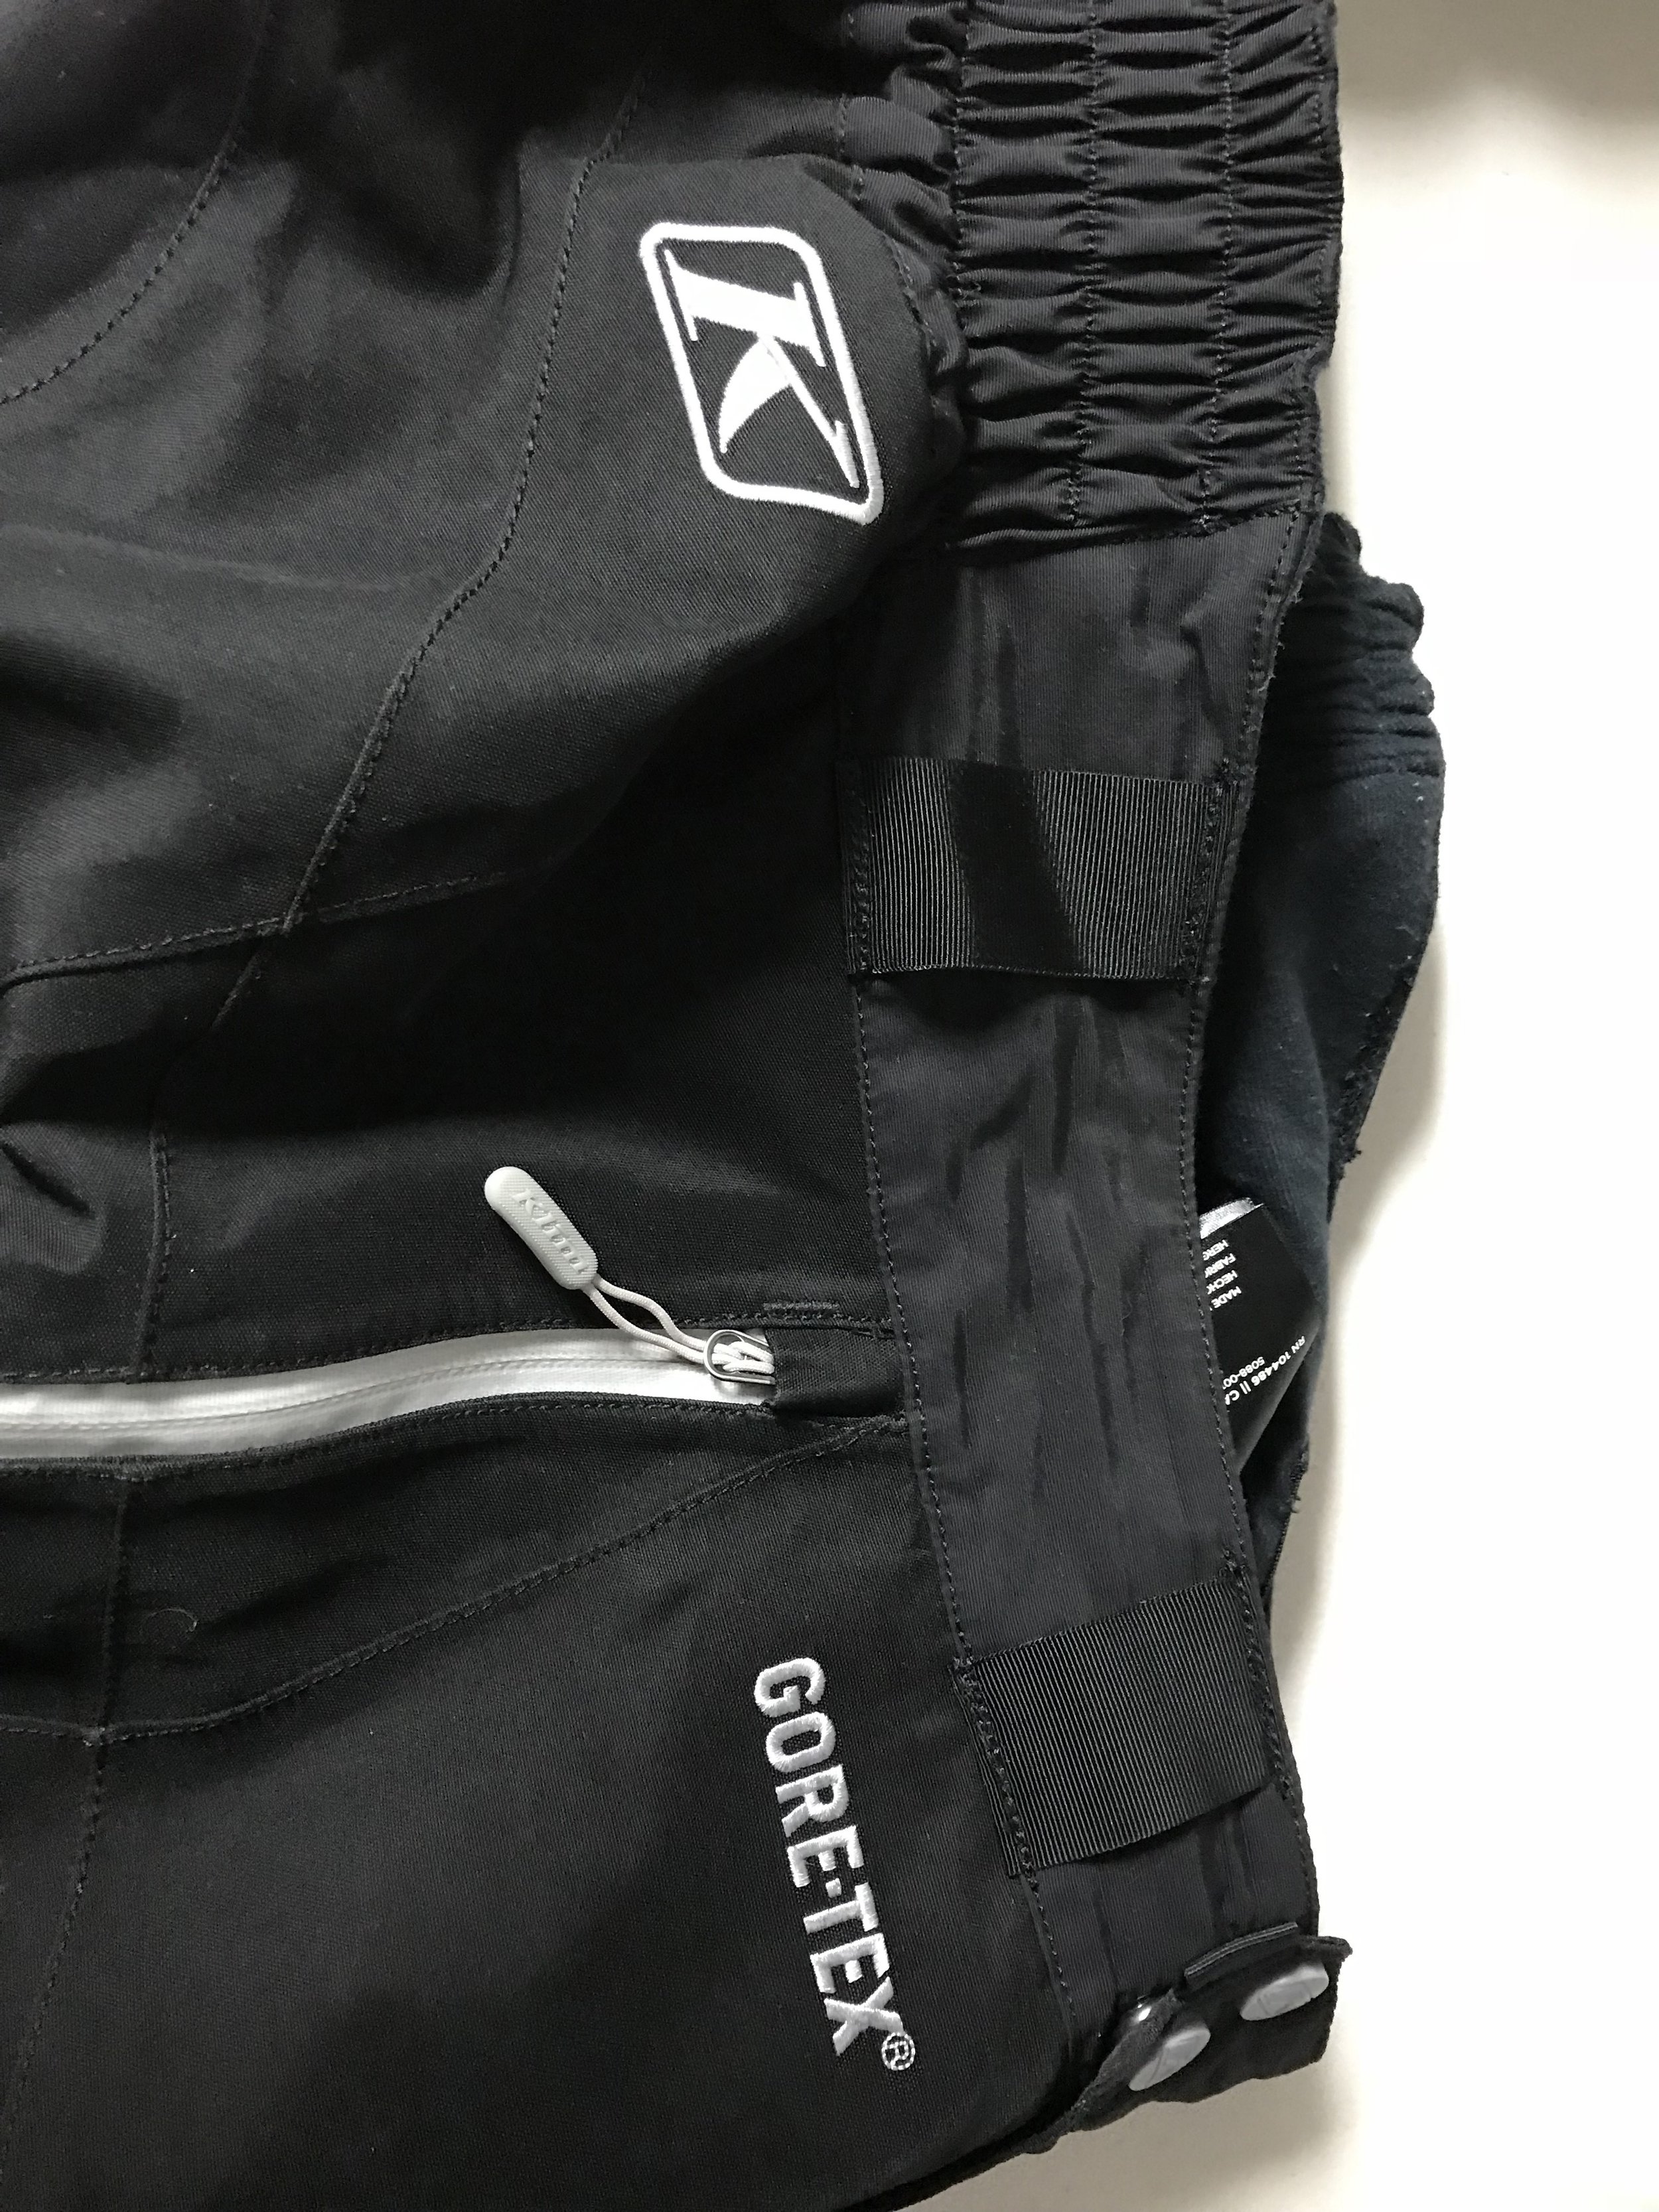 Added belt loops to Klim Goretex pants